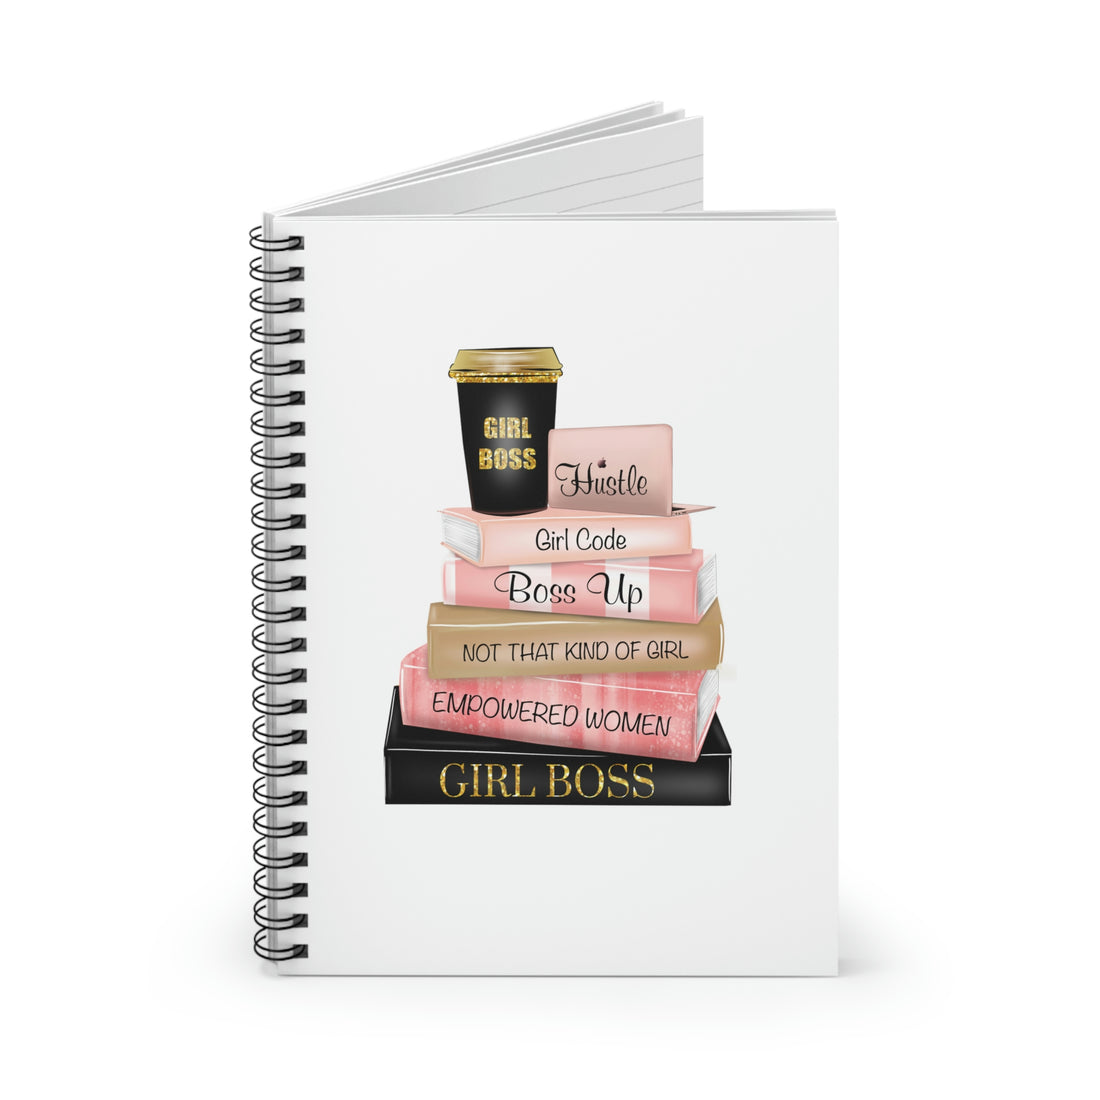 Girl Boss Notebook | Girl Boss | Business Spiral Notebook | Hustle Notebook